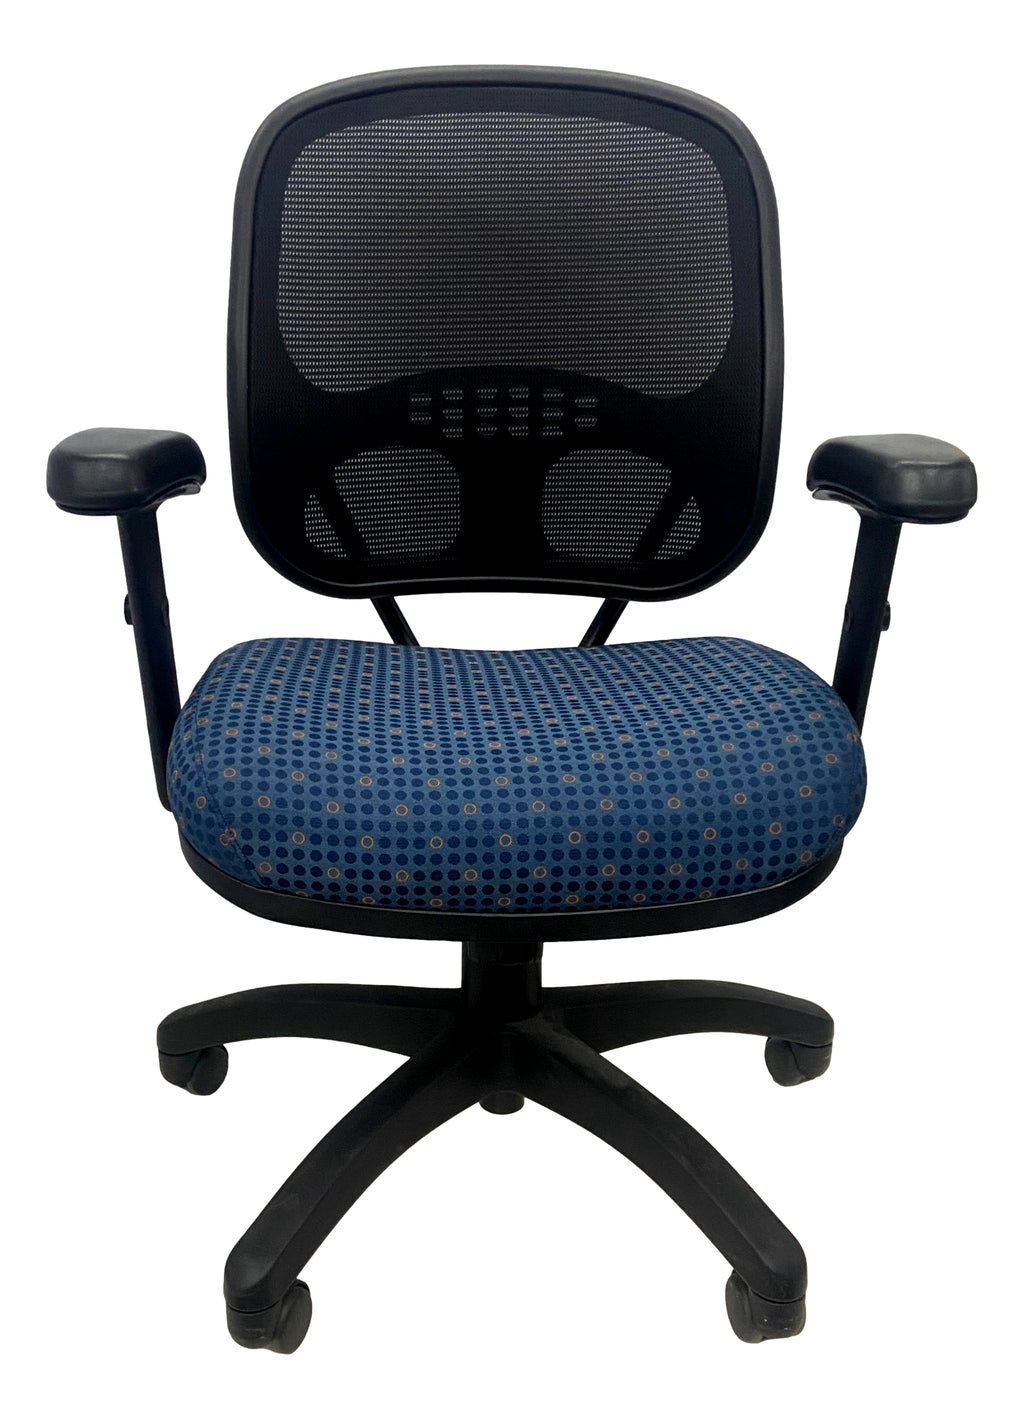 Pre-Owned AIS Swivel Chair - Blue